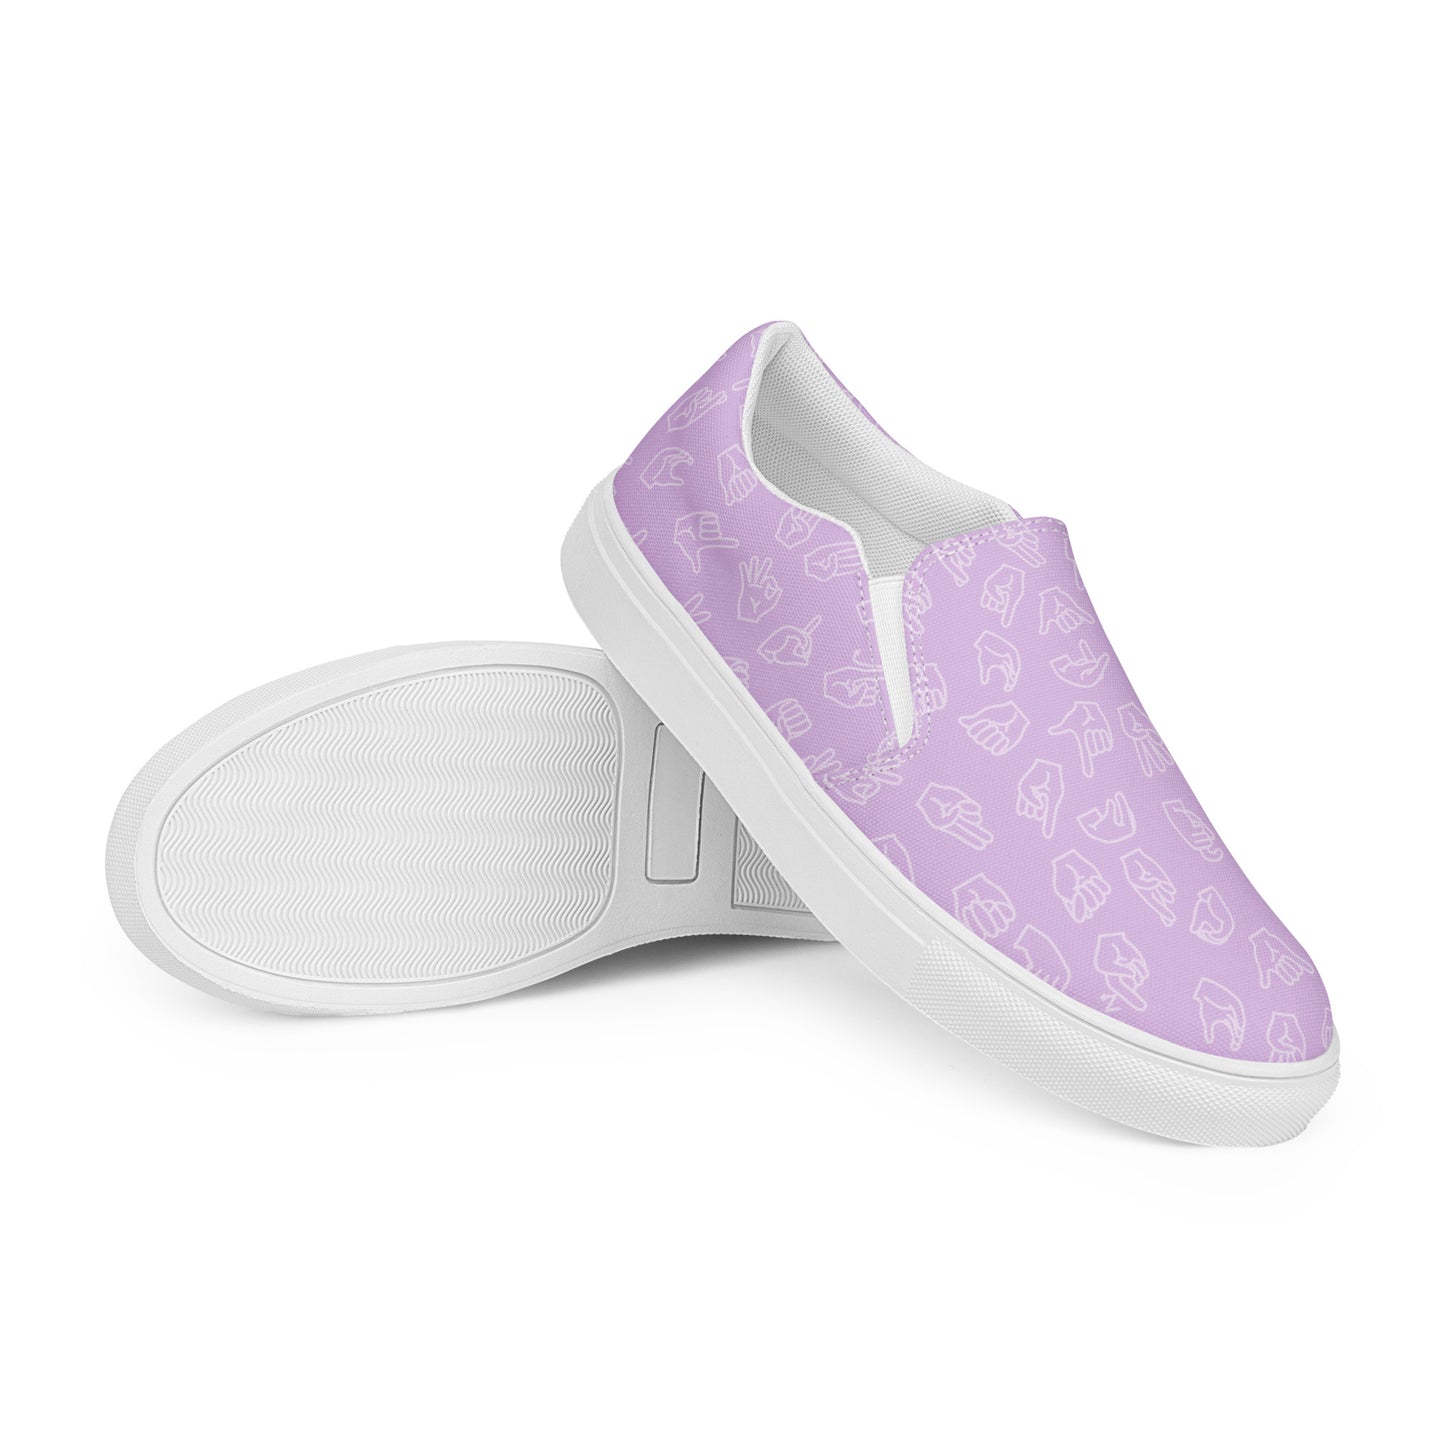 Lavender ASL Slip-on Canvas Shoes (Women's Sizes)